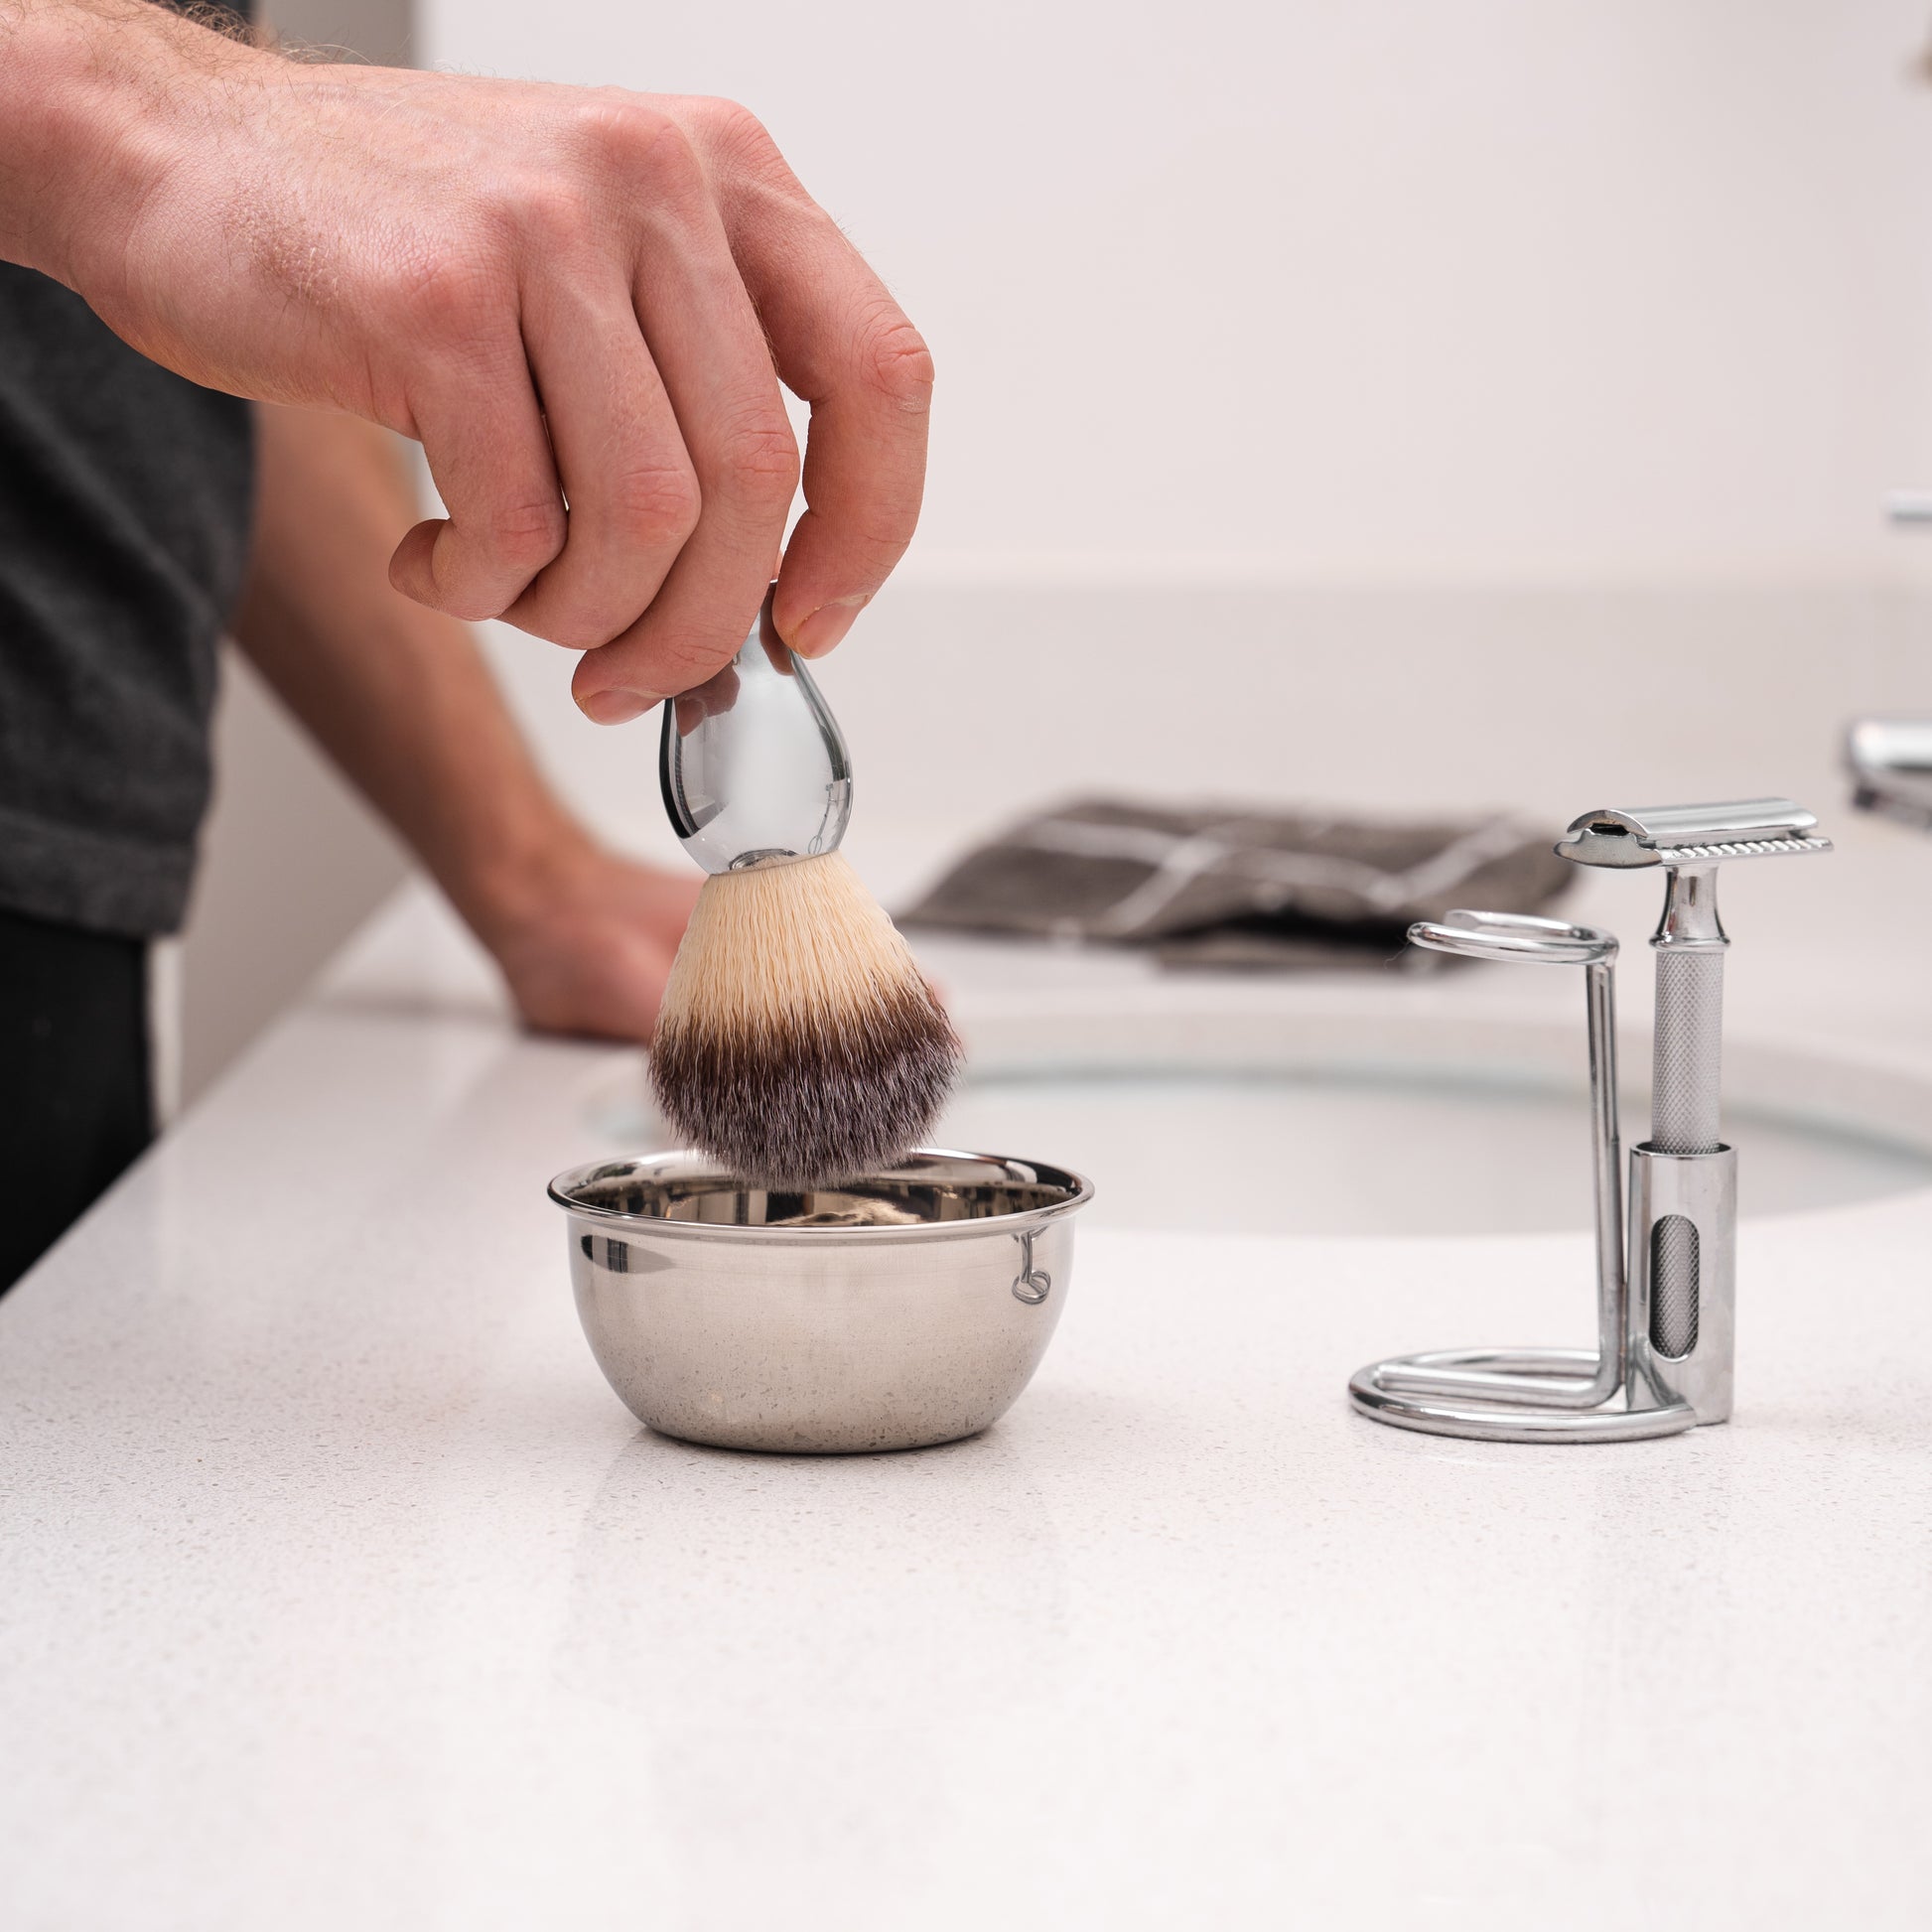 luxury shaving kit with razor, brush and bowl